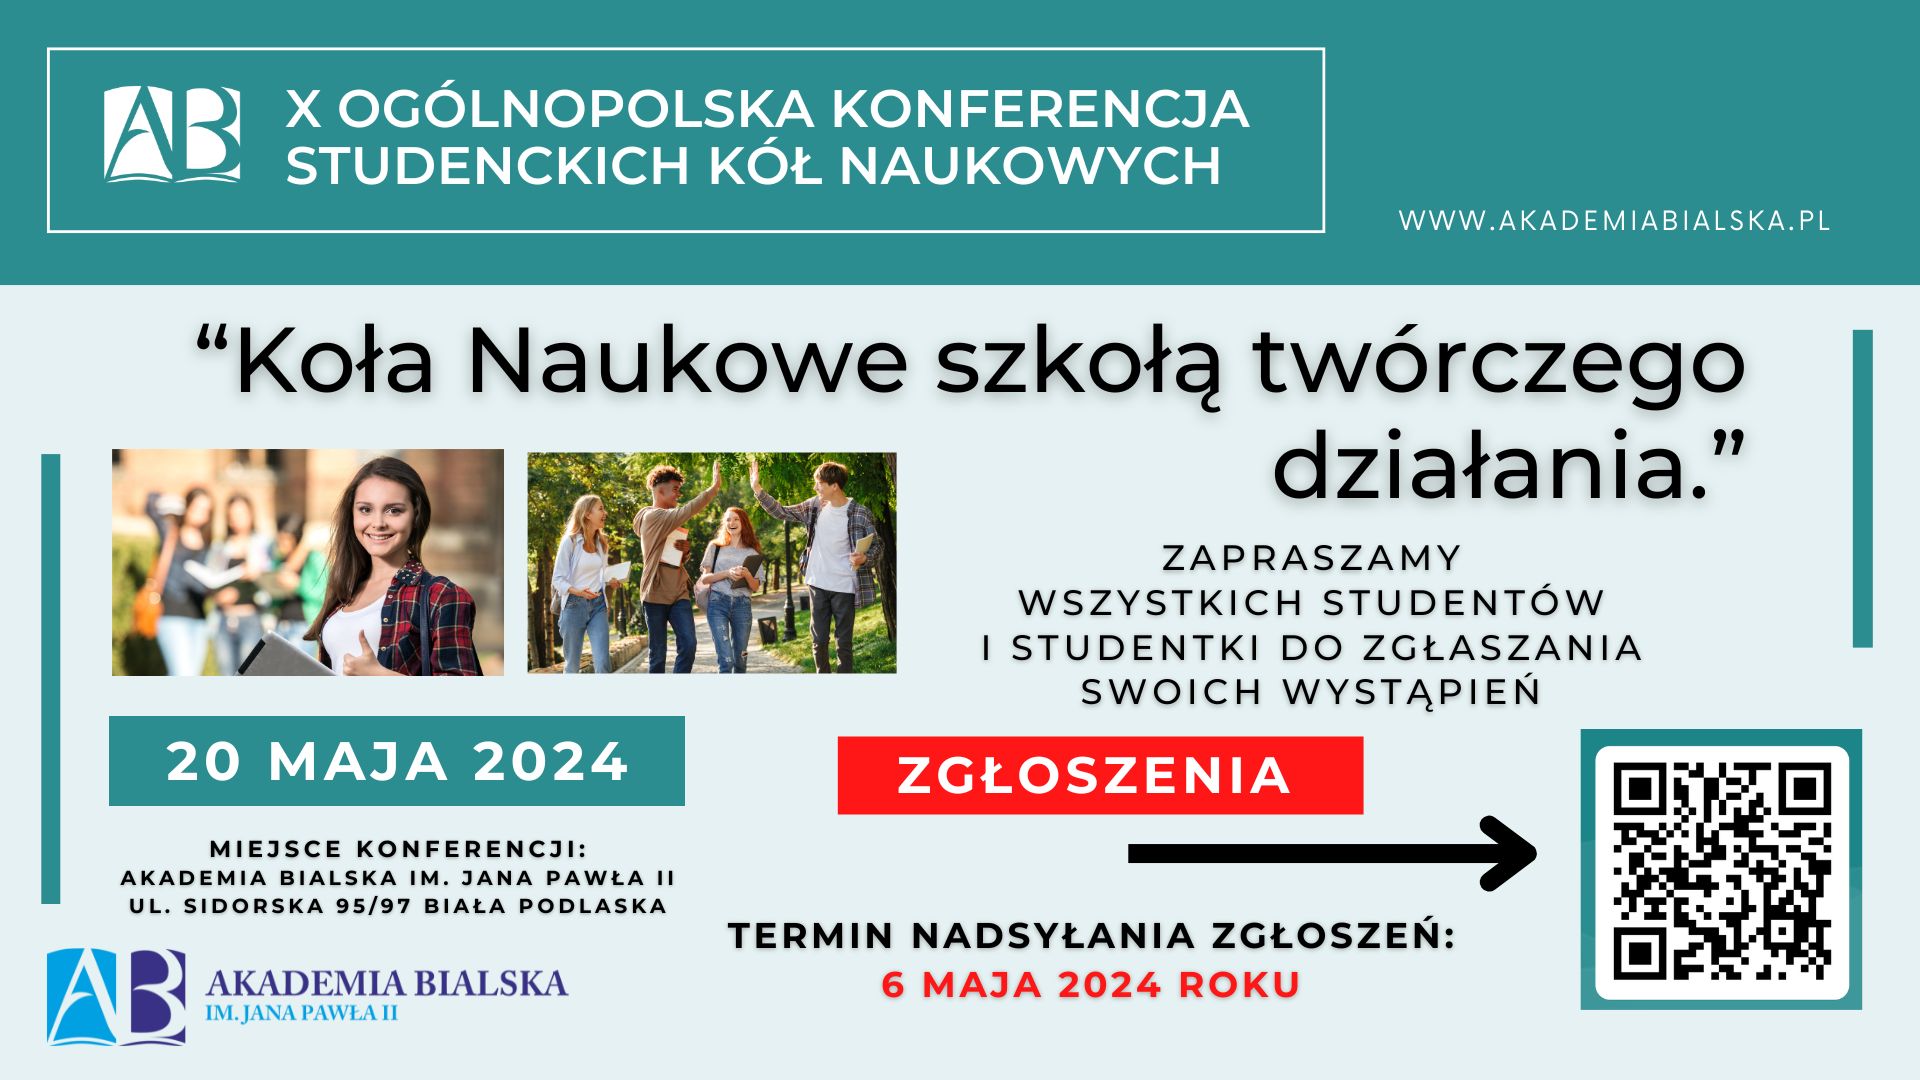 x_ogolnopolska_konferencja_studenckich_kol_naukowych.jpg